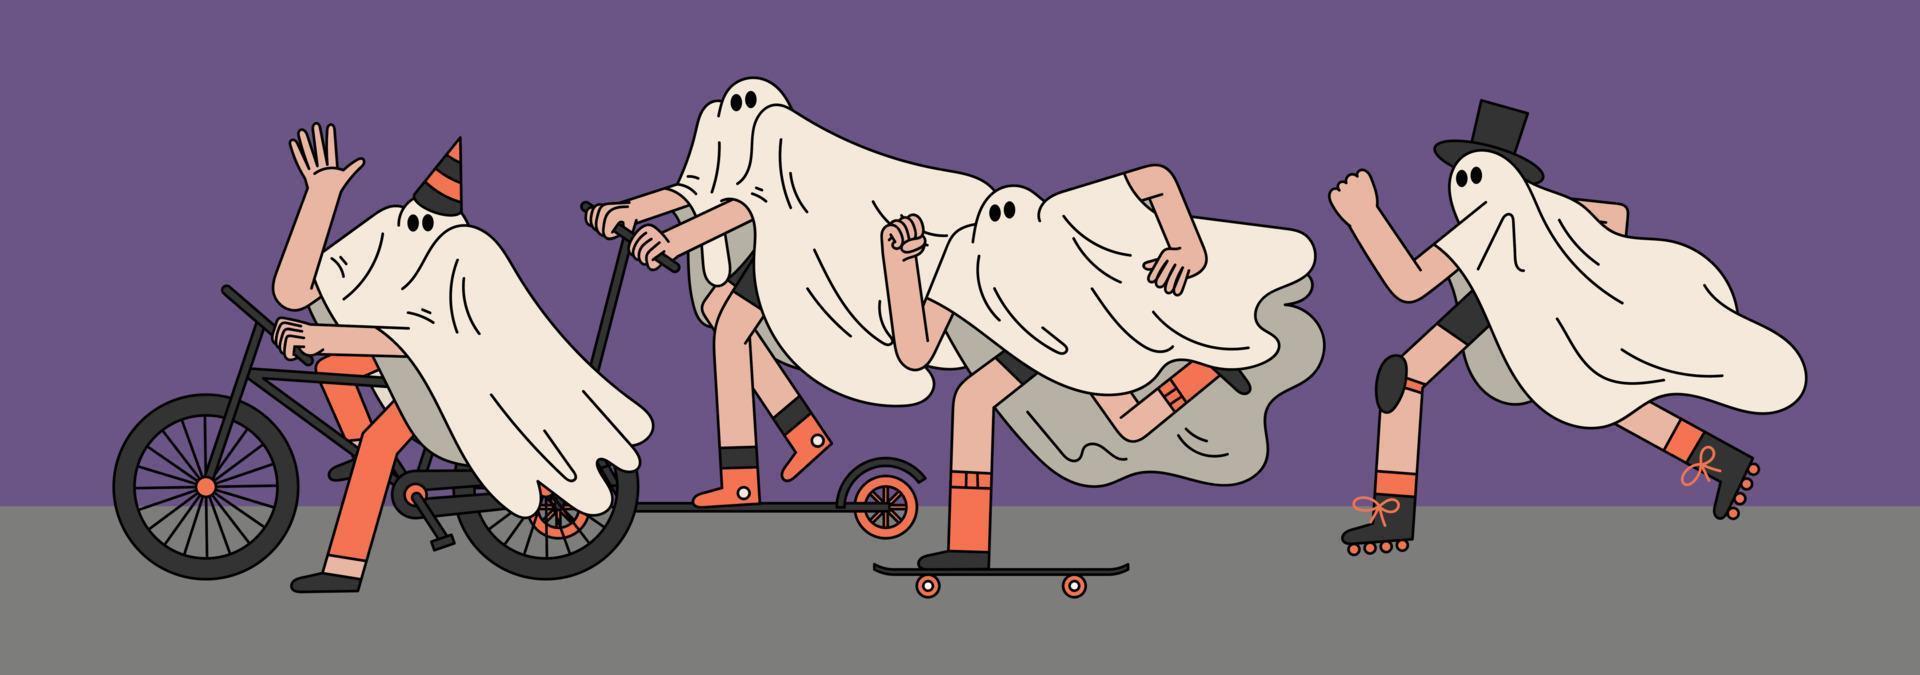 geest rijden fiets scooter, skateboard en rolschaatsen hand- getrokken karakter illustratie vector